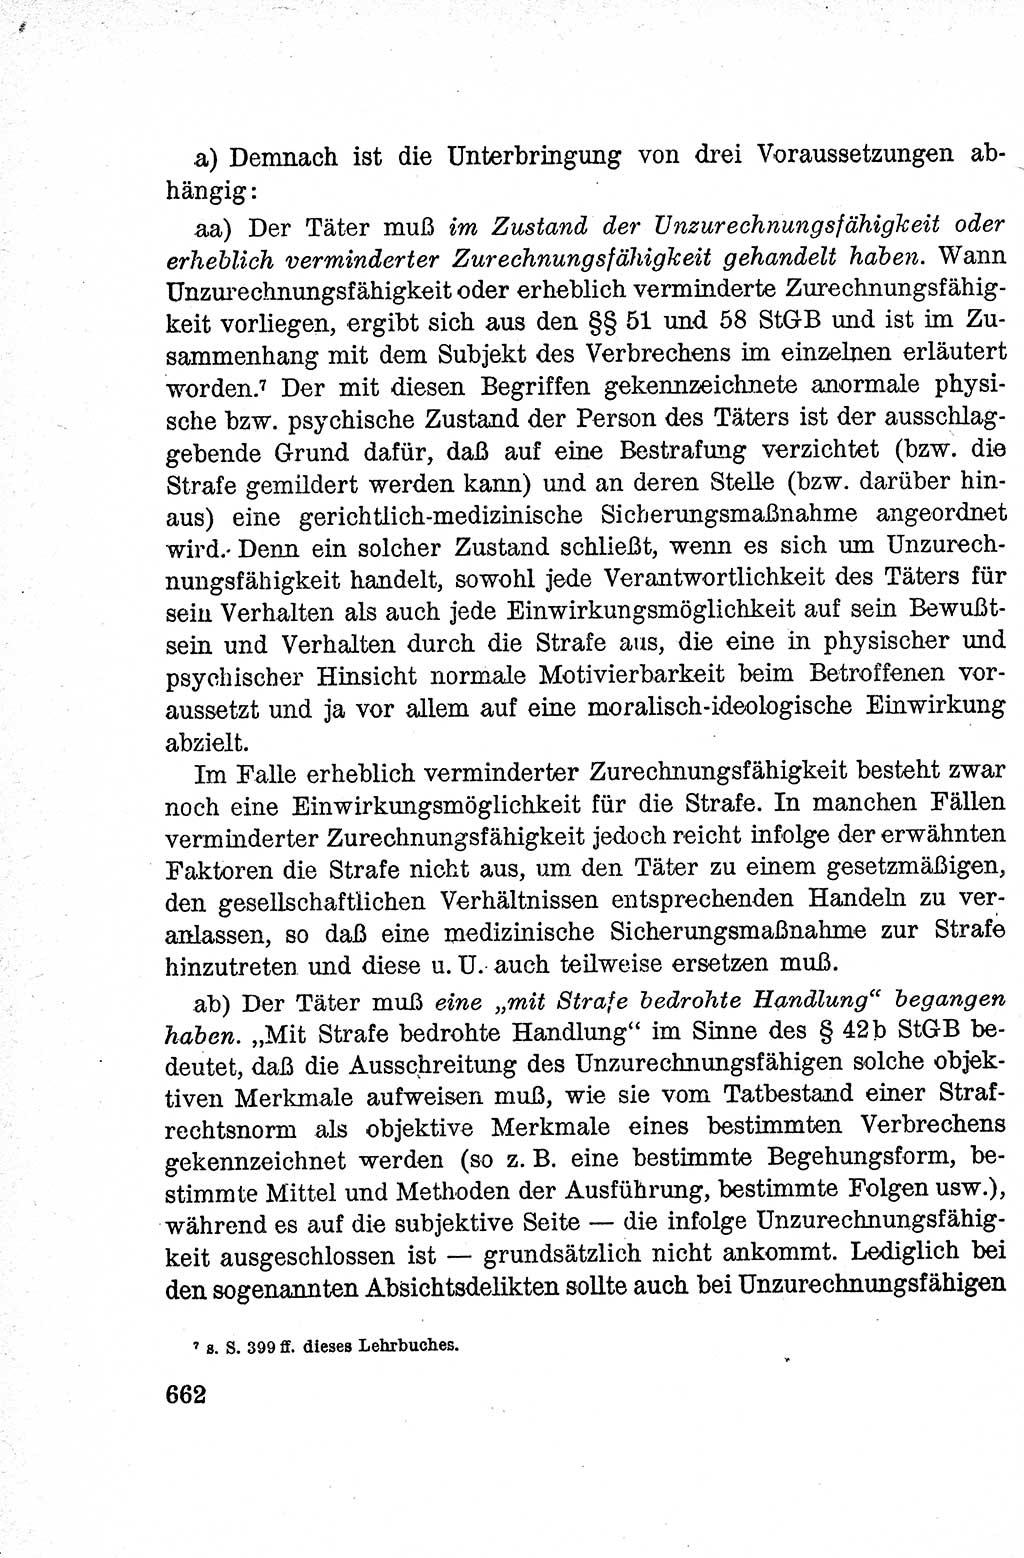 Lehrbuch des Strafrechts der Deutschen Demokratischen Republik (DDR), Allgemeiner Teil 1959, Seite 662 (Lb. Strafr. DDR AT 1959, S. 662)